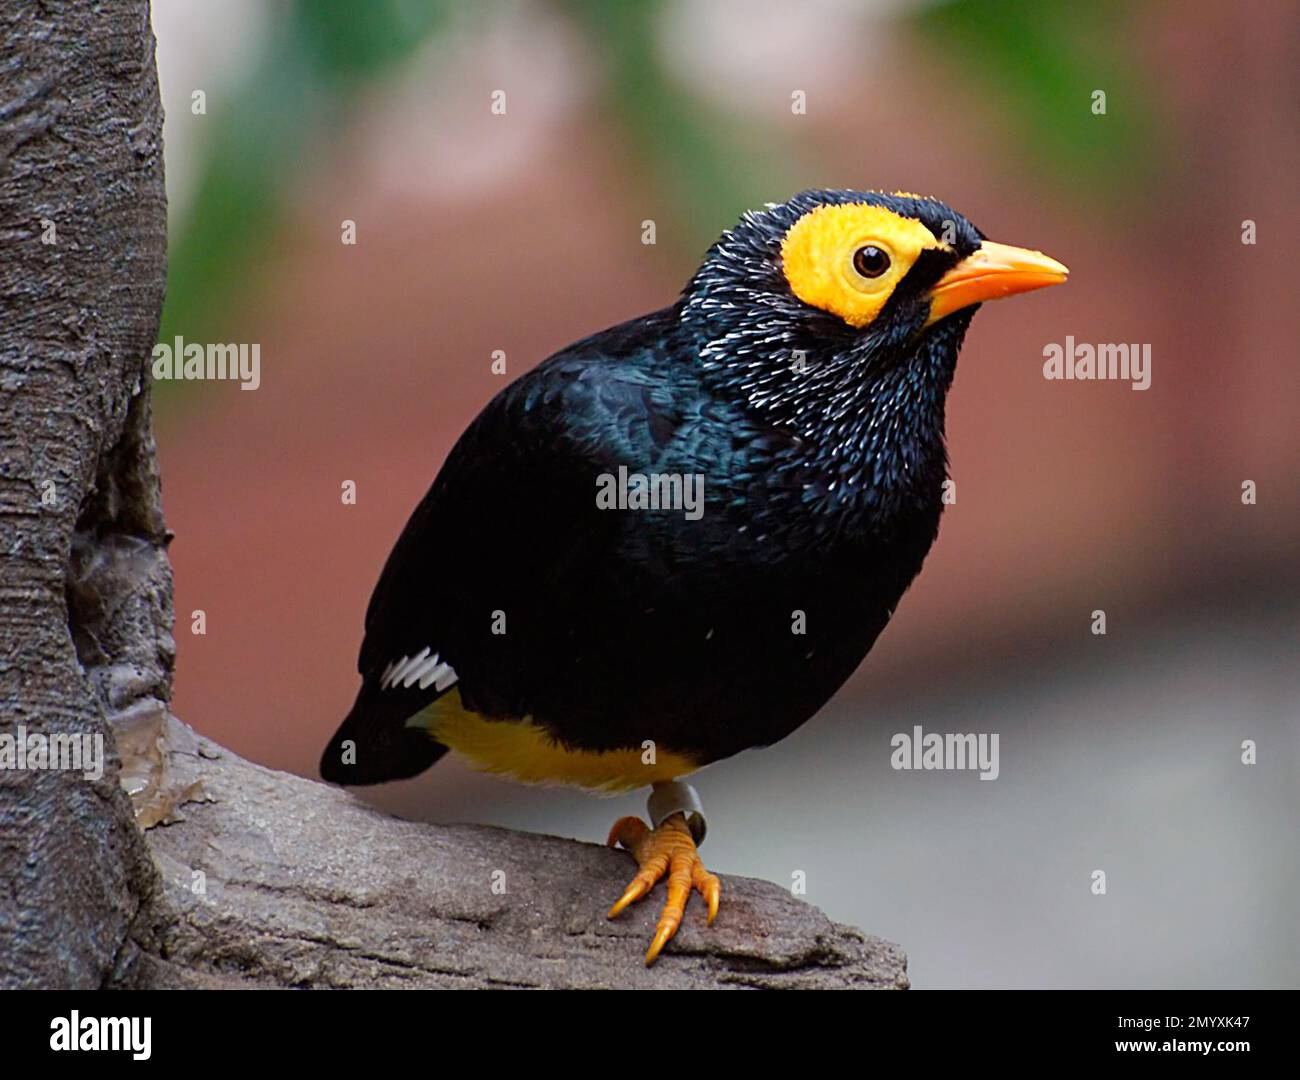 Bernard Spragg - schöne Vogelfotografie - Gelbgesichtige Myna - Mino dumontii - Stockfoto